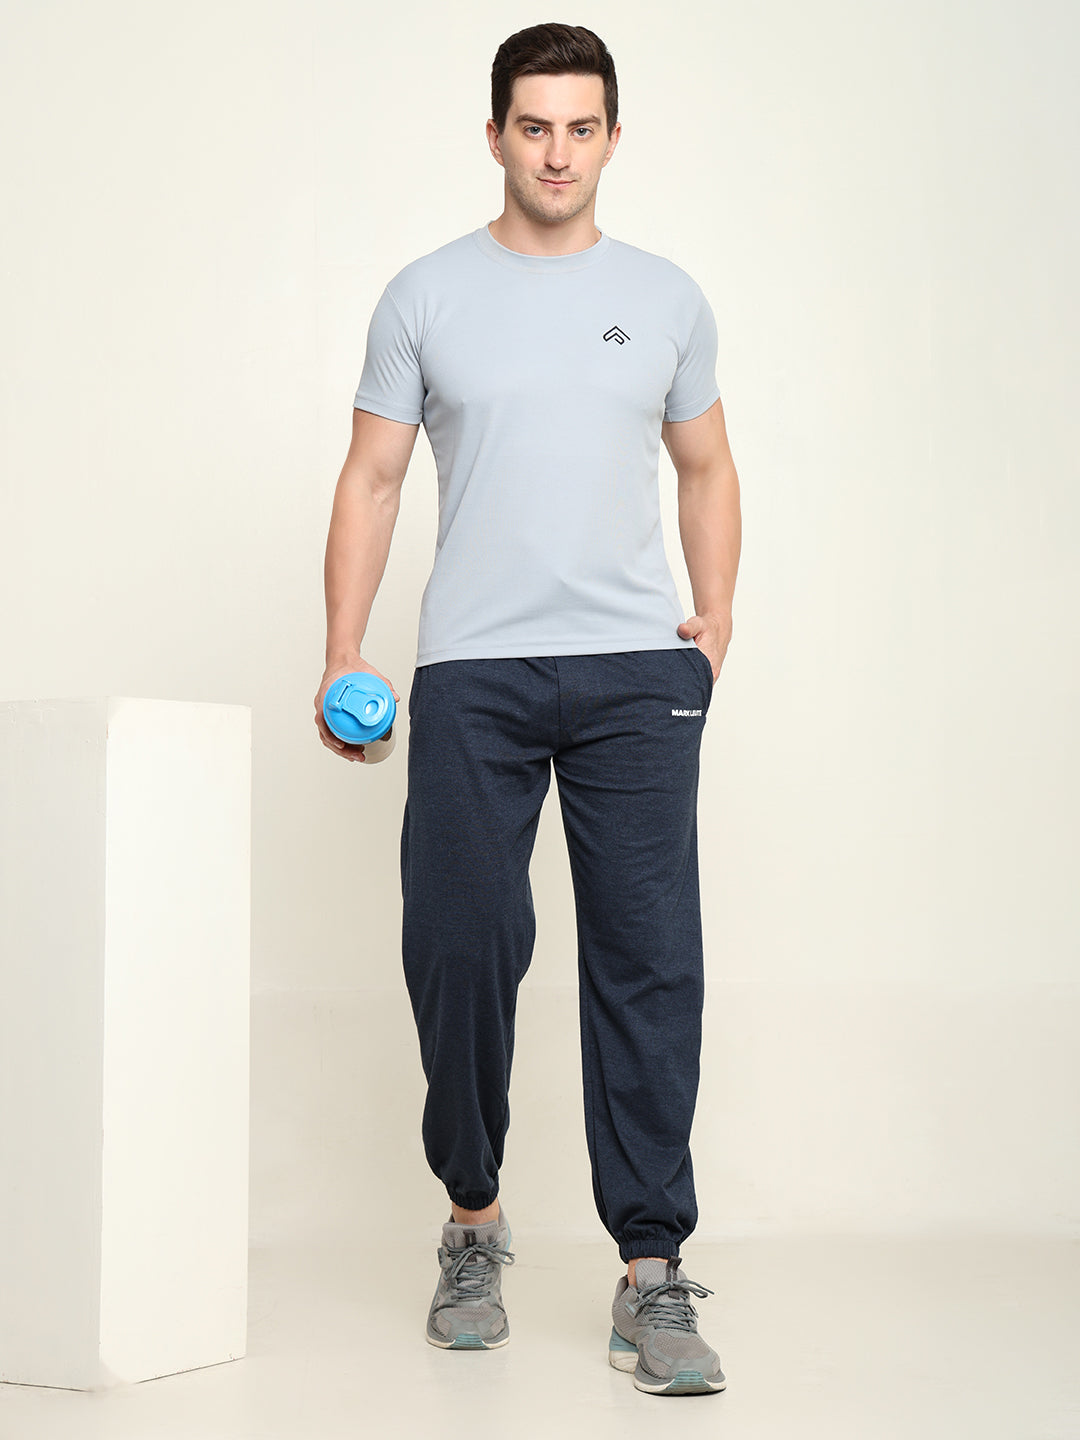 Breathable Loose Fit Cotton Track Pant for Men.(Melange Blue)